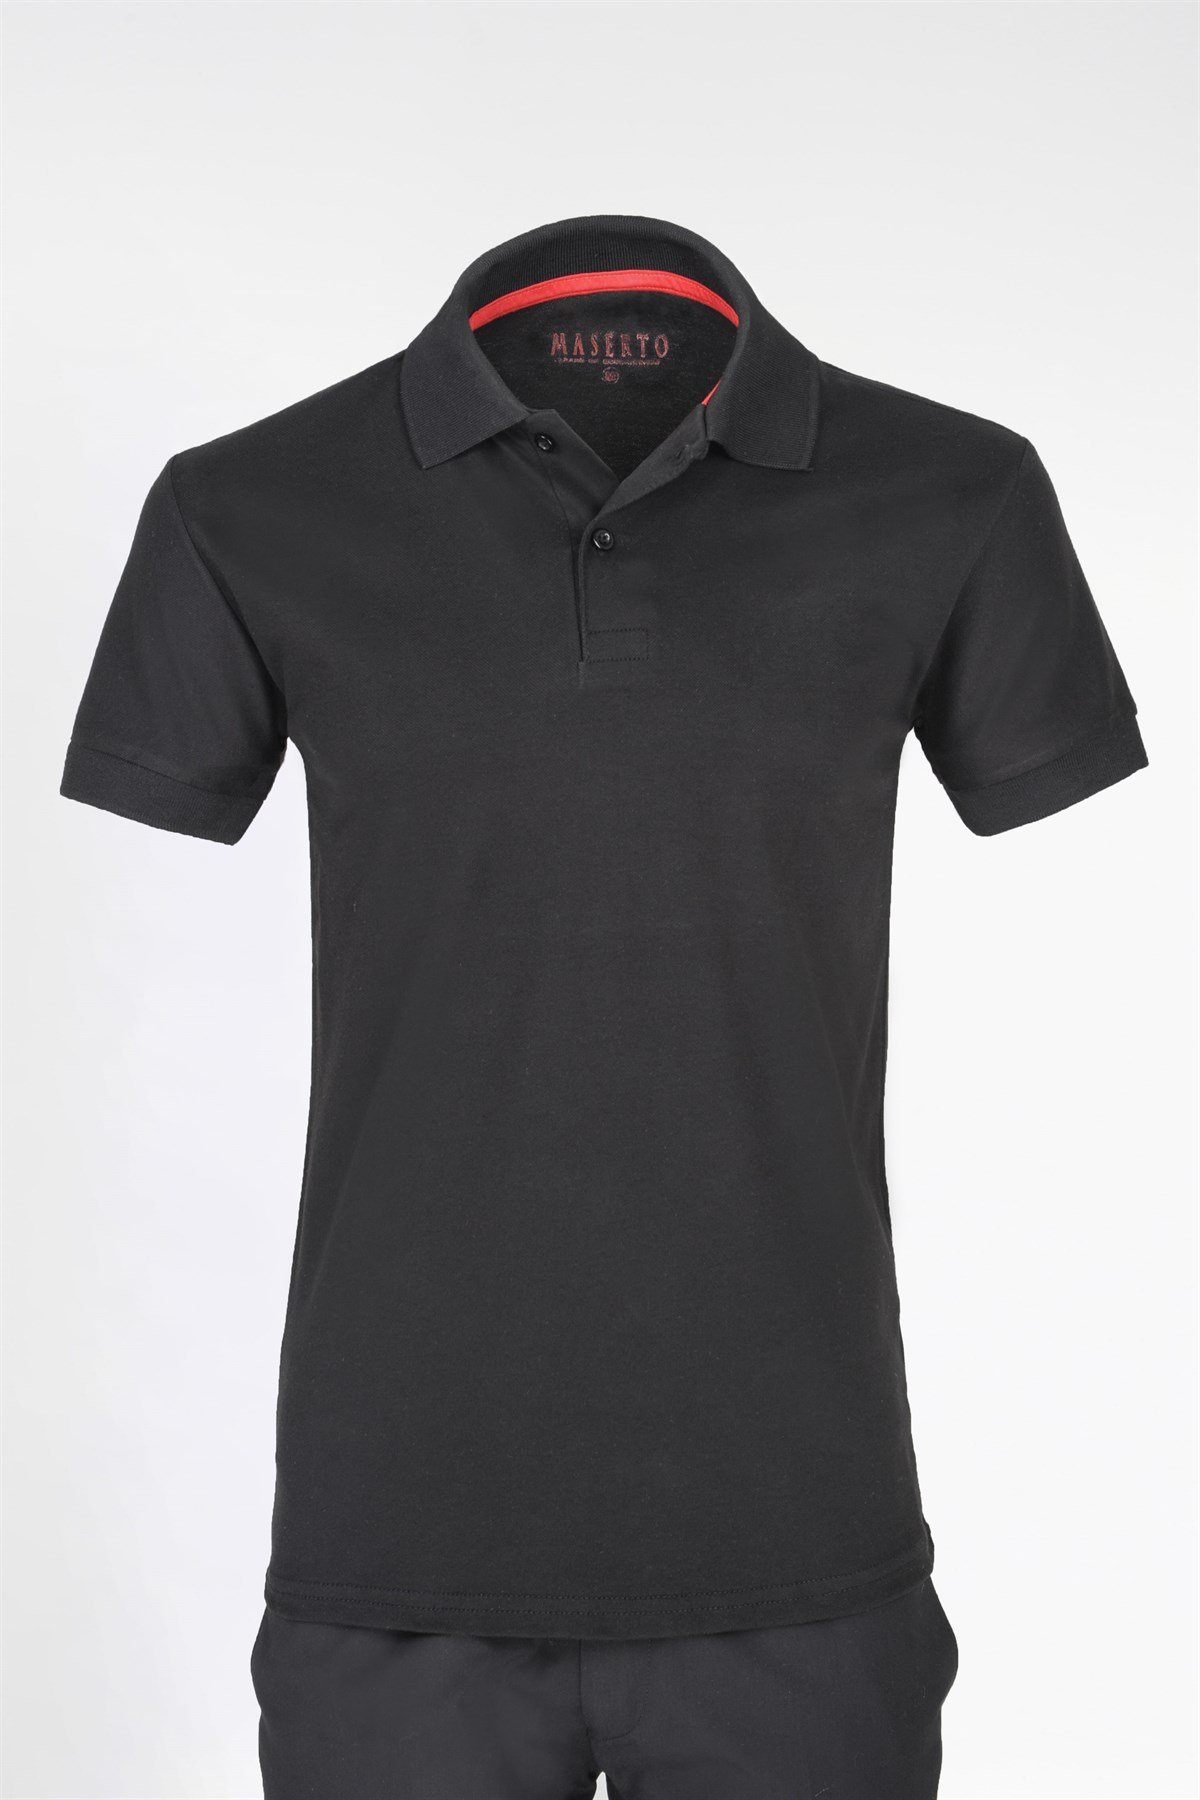 Maserto Slim Fit Polo Yaka Siyah T-Shirt | maserto.com